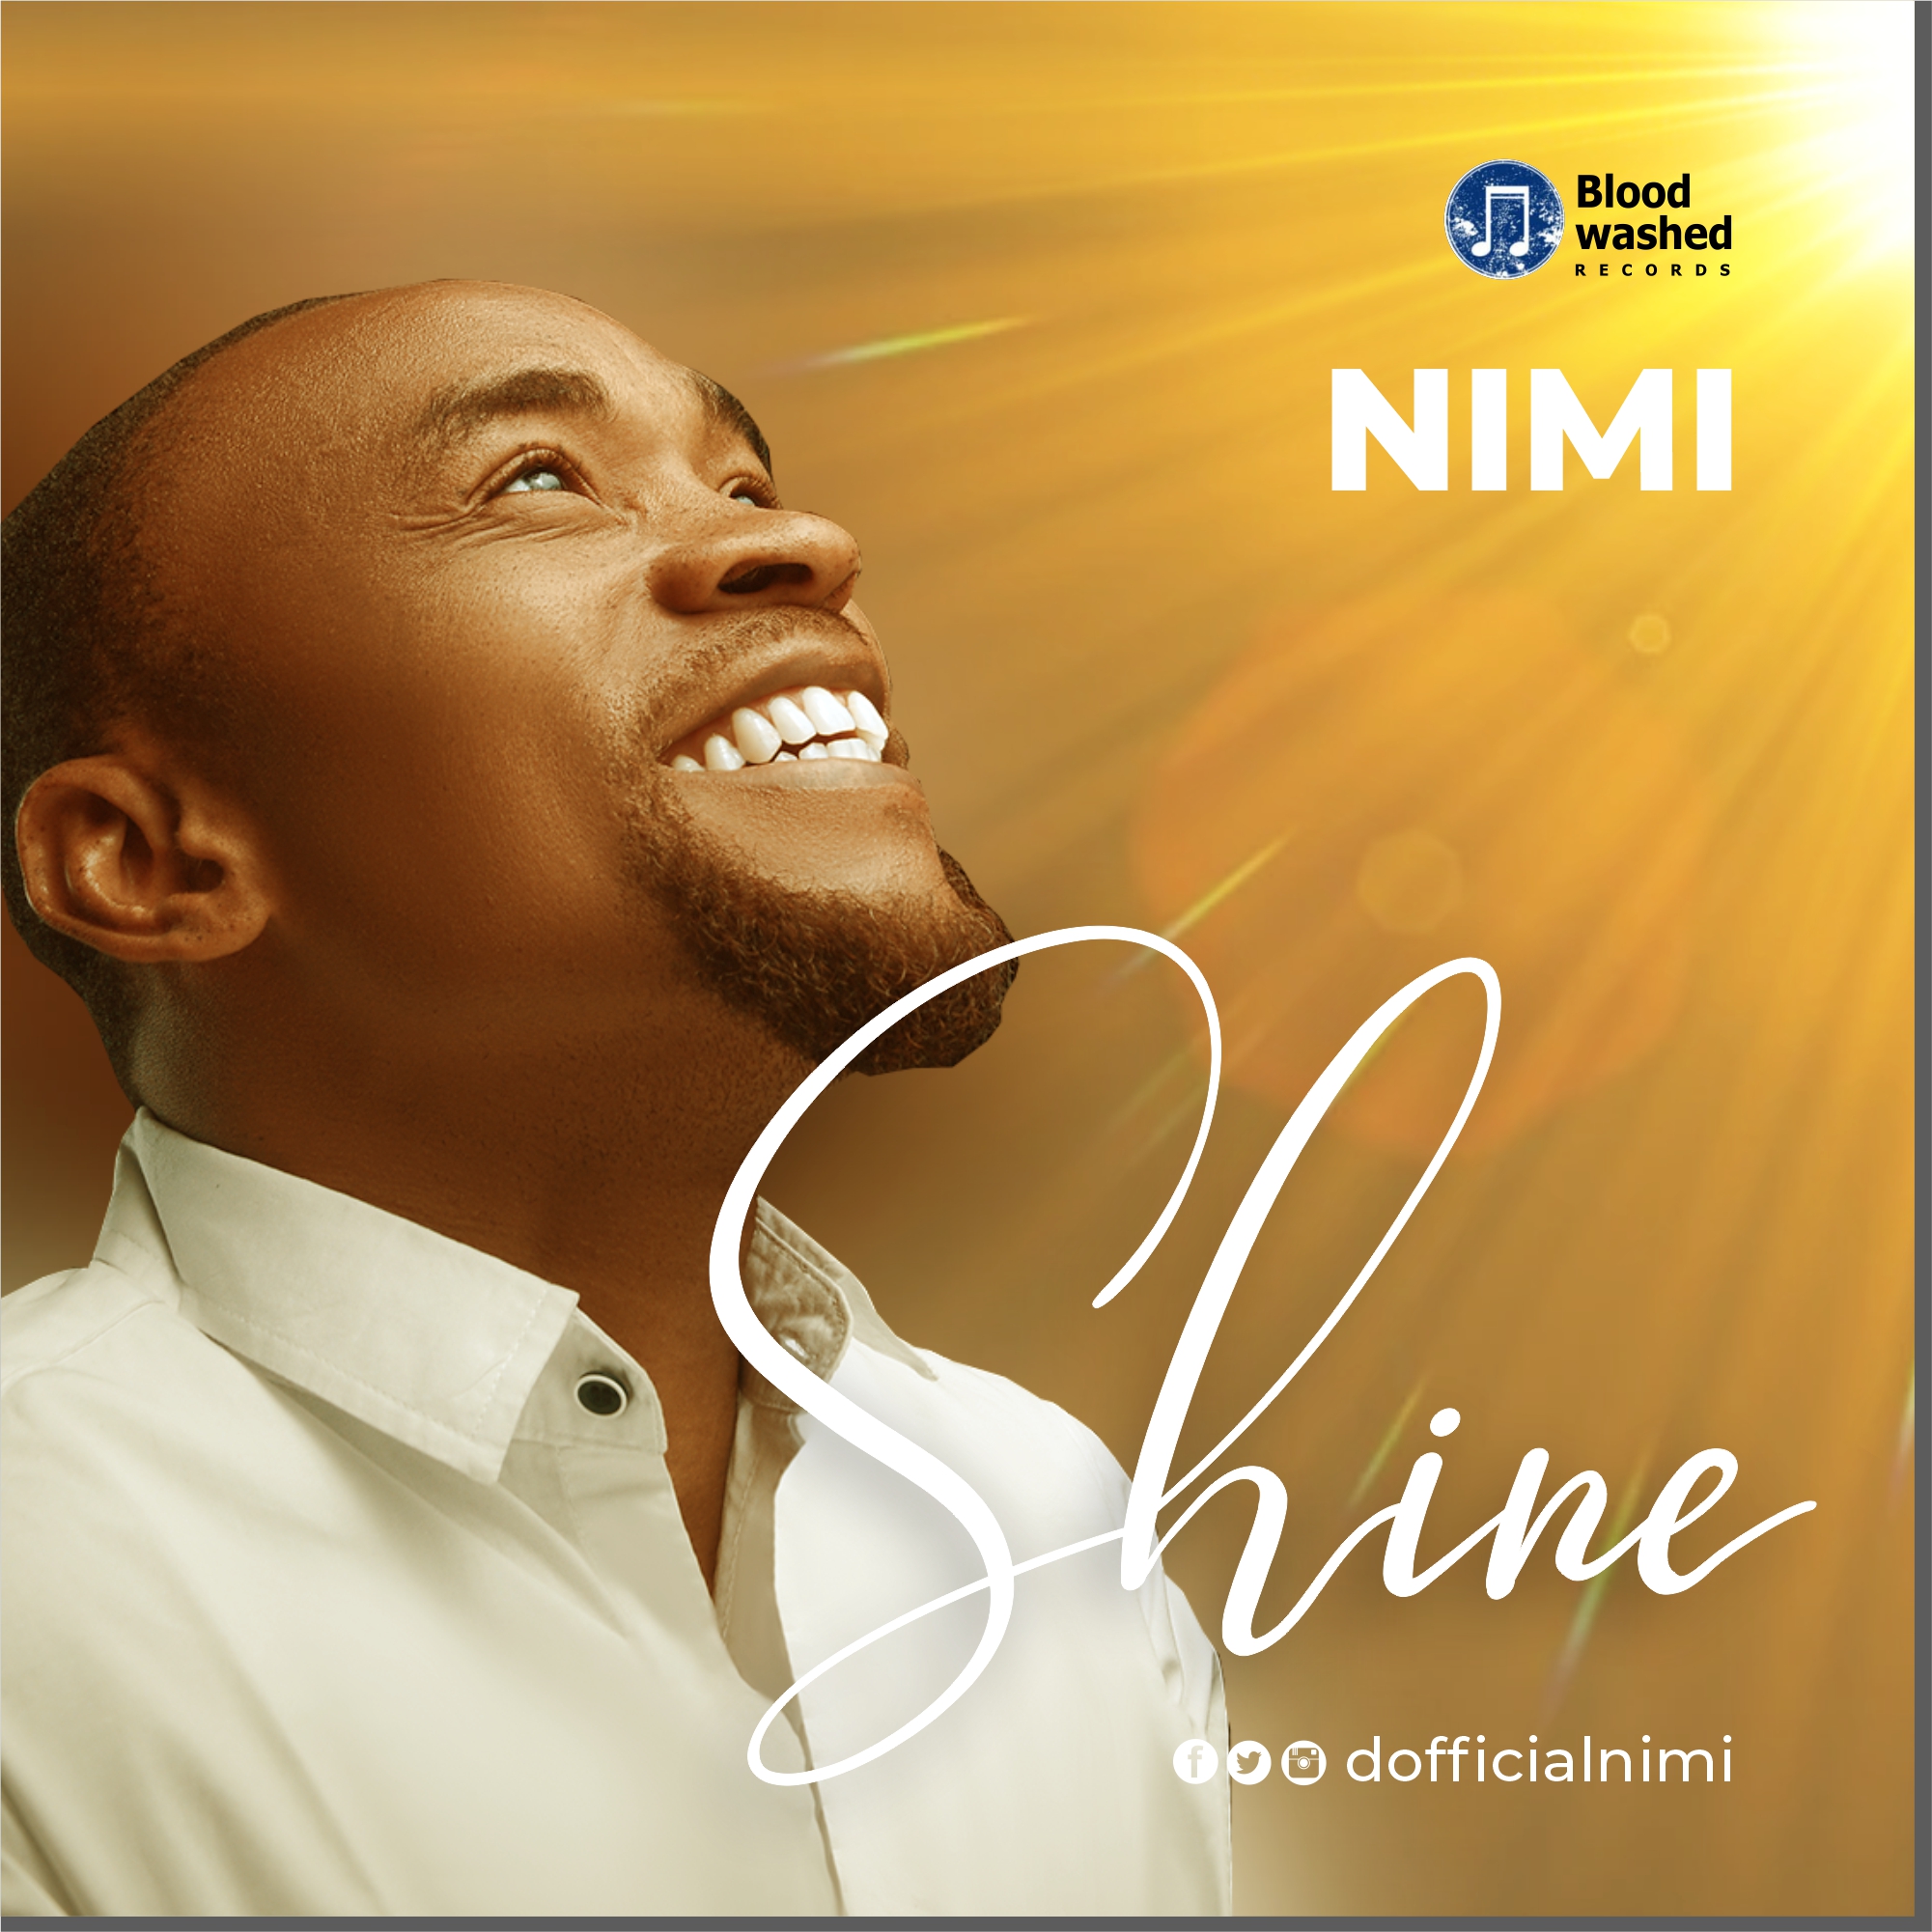 Download Nimi Shine mp3.